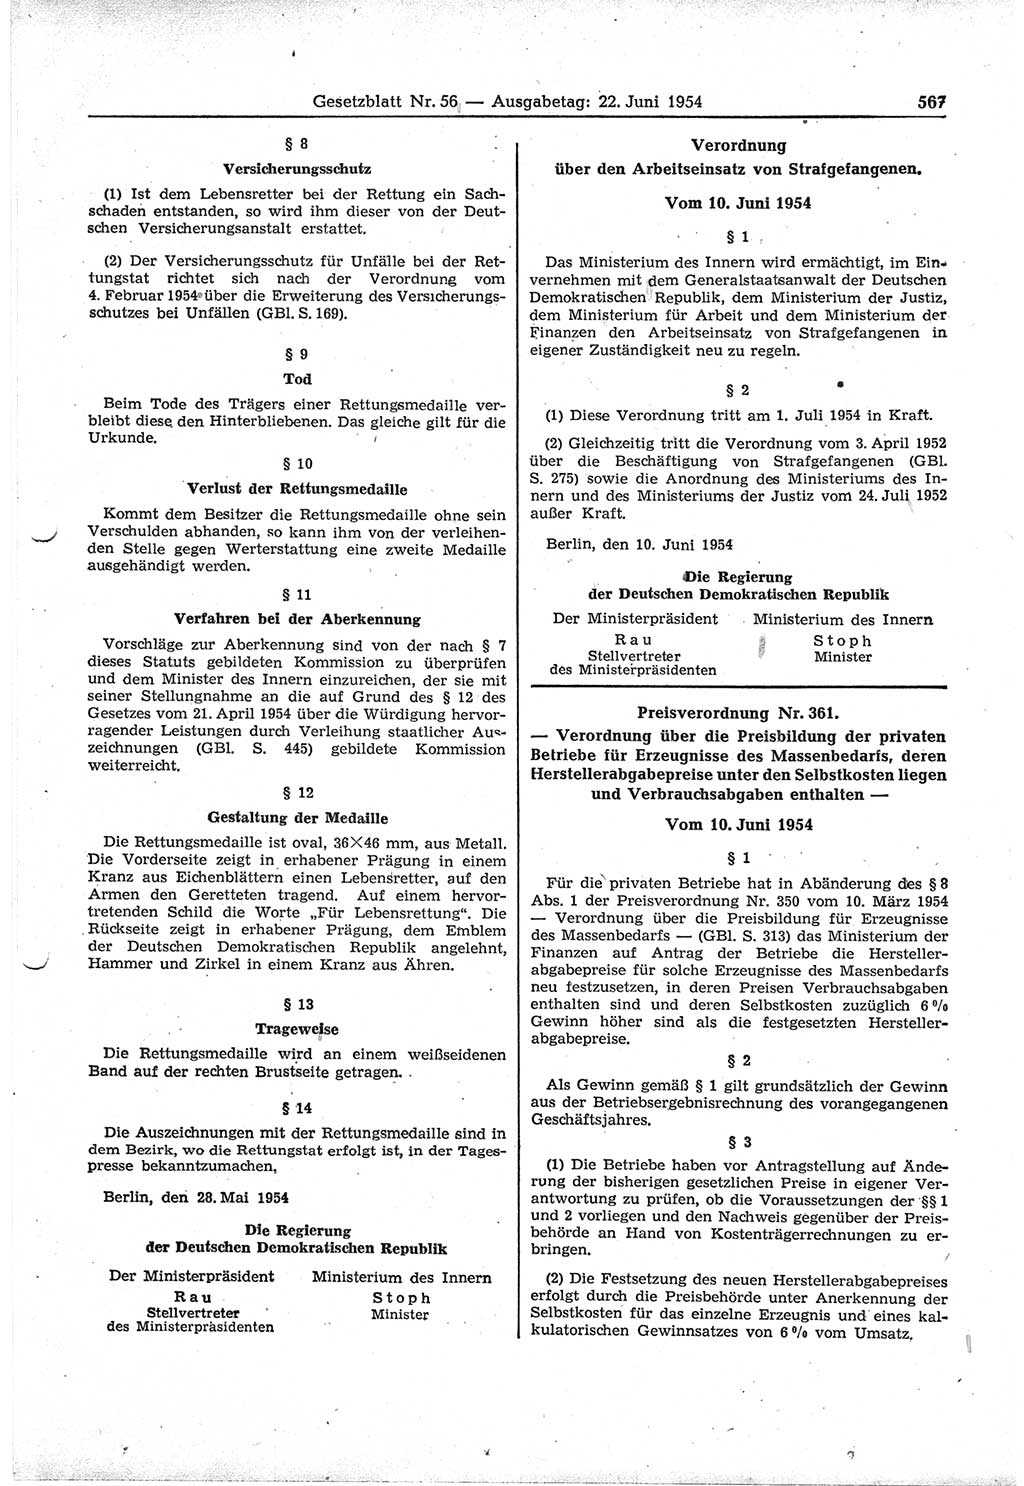 Gesetzblatt (GBl.) der Deutschen Demokratischen Republik (DDR) 1954, Seite 567 (GBl. DDR 1954, S. 567)